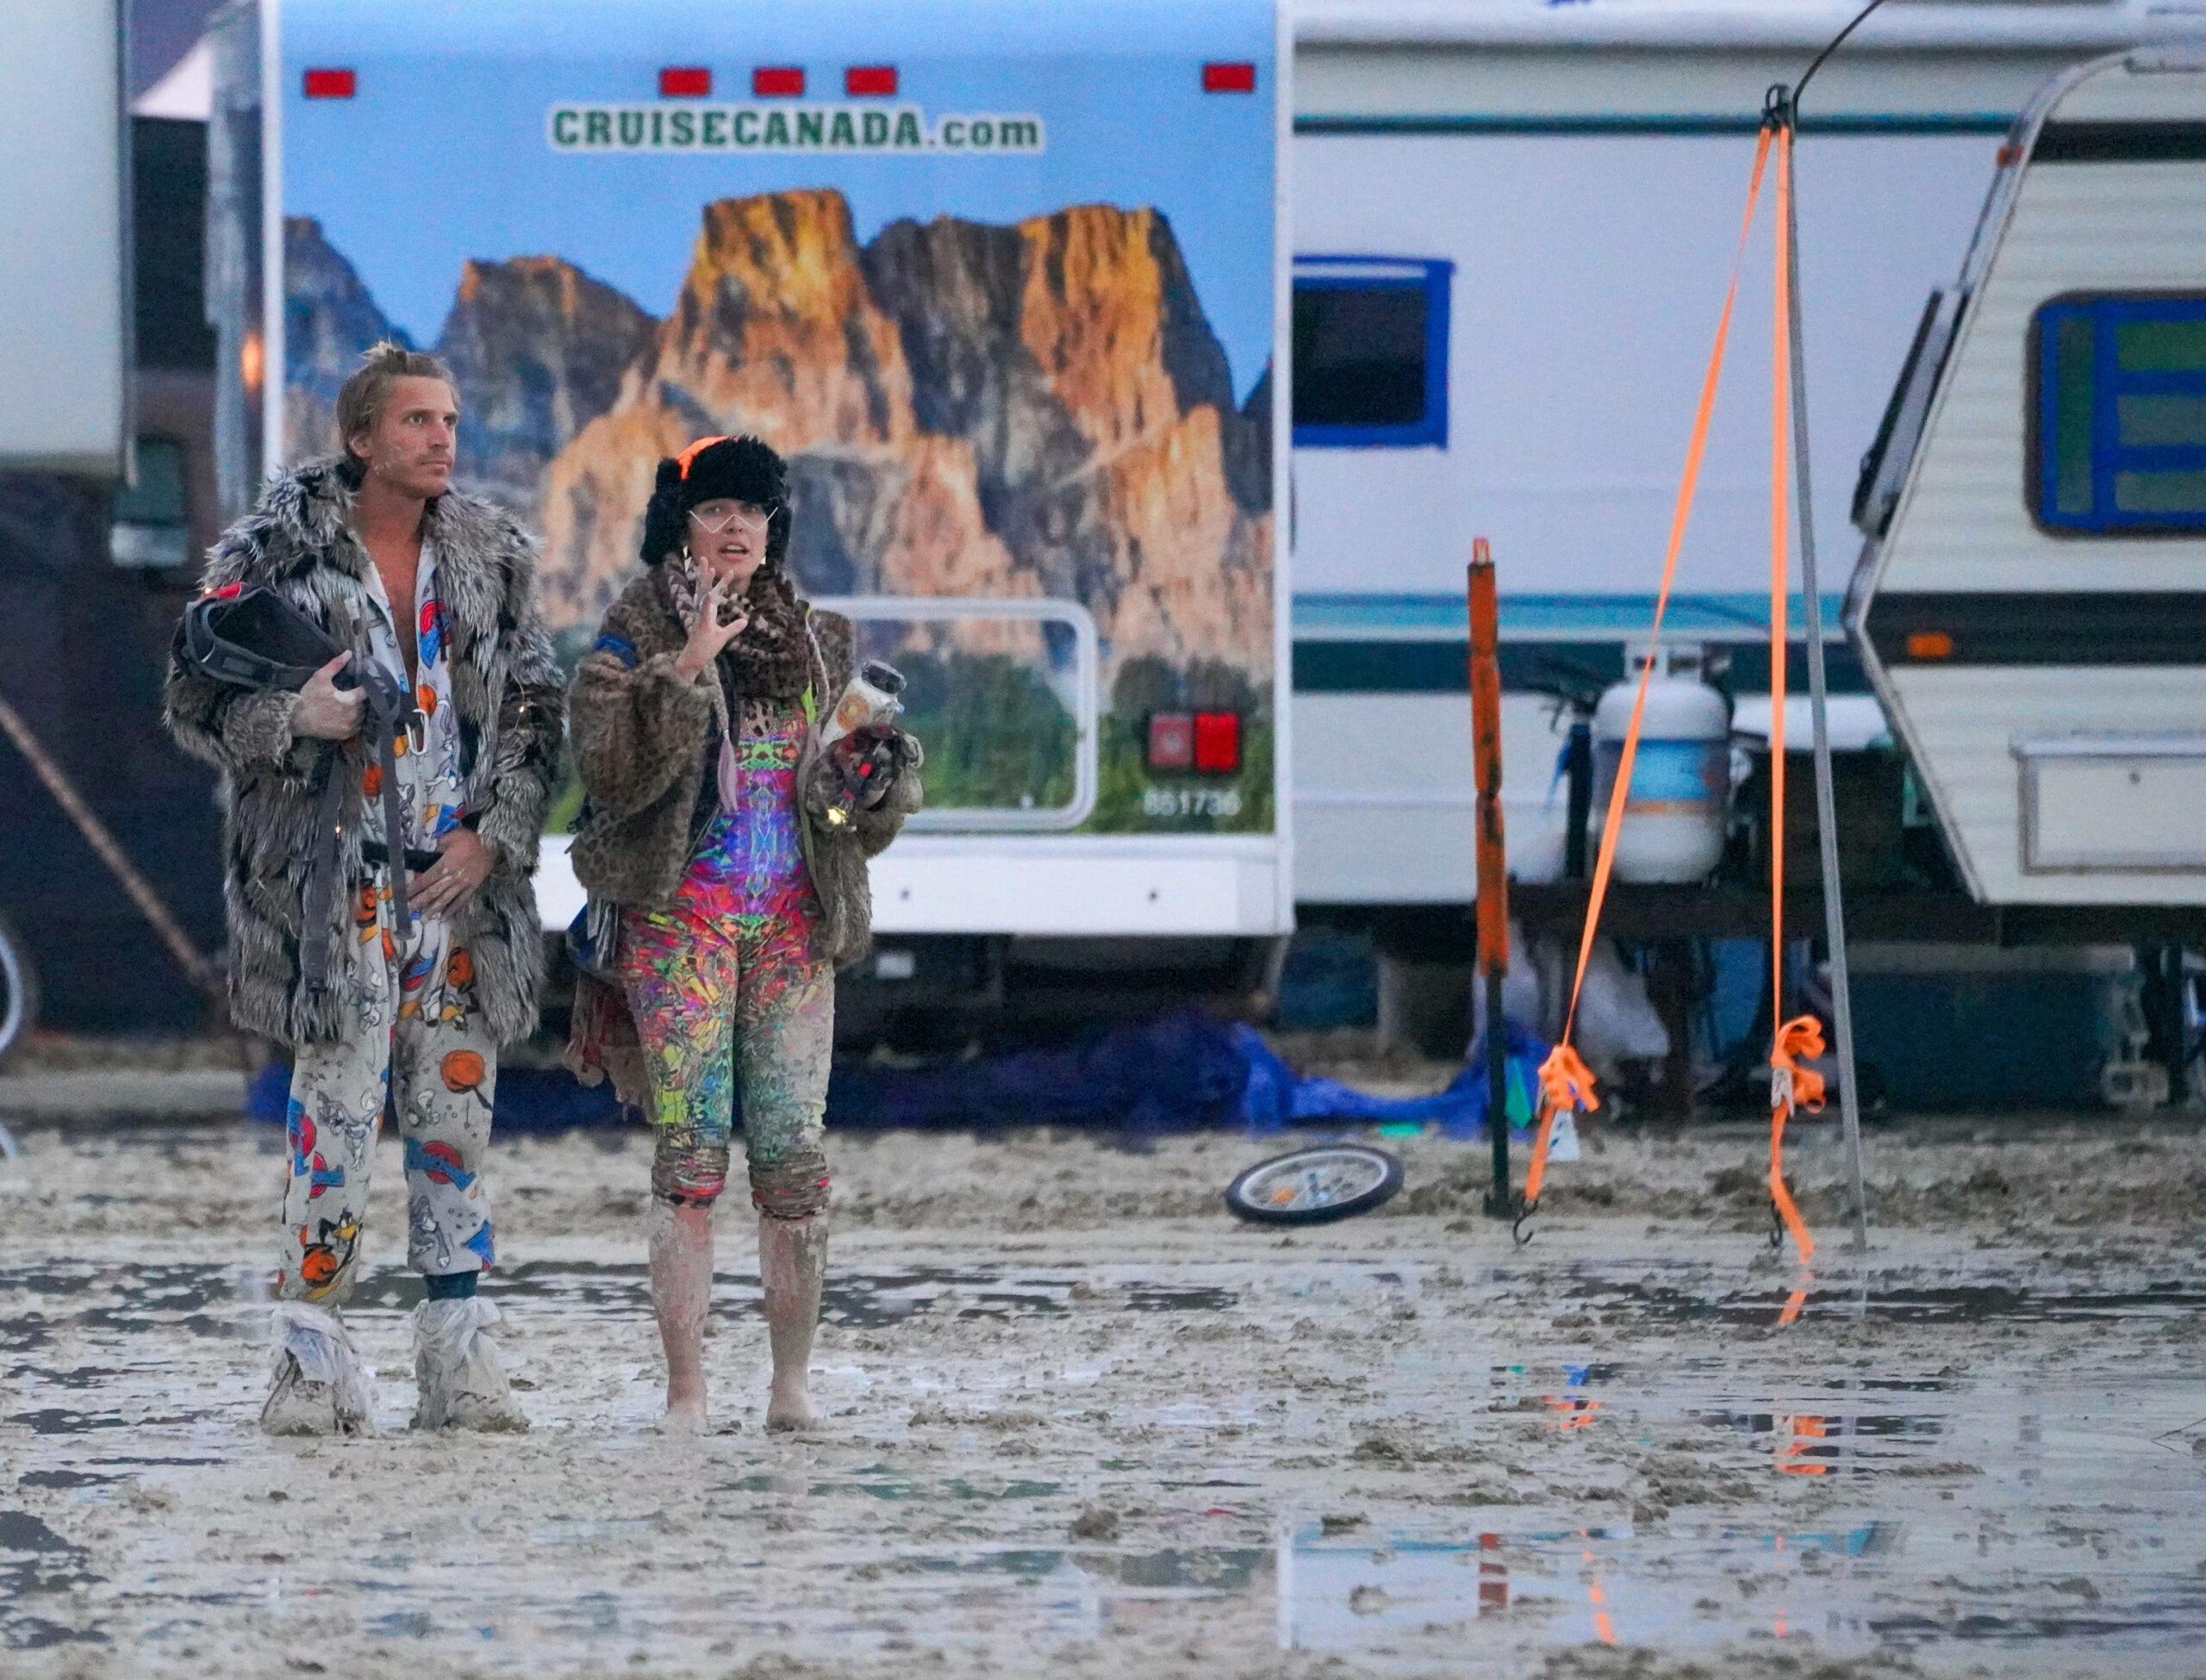 Festival-Besucher stehen verzweifelt auf dem „Burning Man“-Gelände.